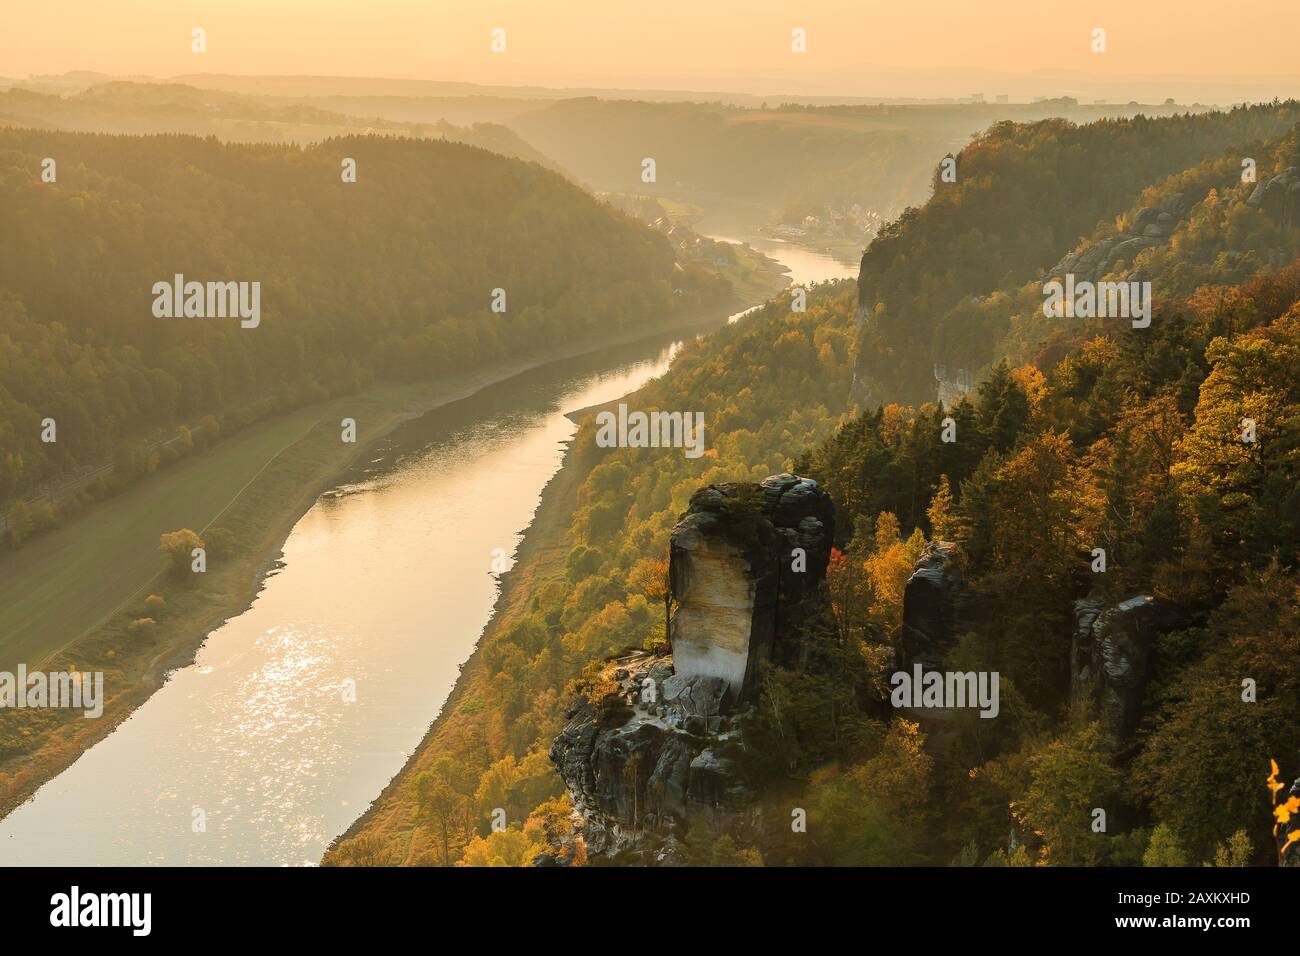 Flusslauf der Elbe in der Sächsischen Schweiz im Herbst. Felsen mit Steinen und Wäldern in der Sonne. Sonnenuntergang am Horizont über dem Elbtal. Stockfoto